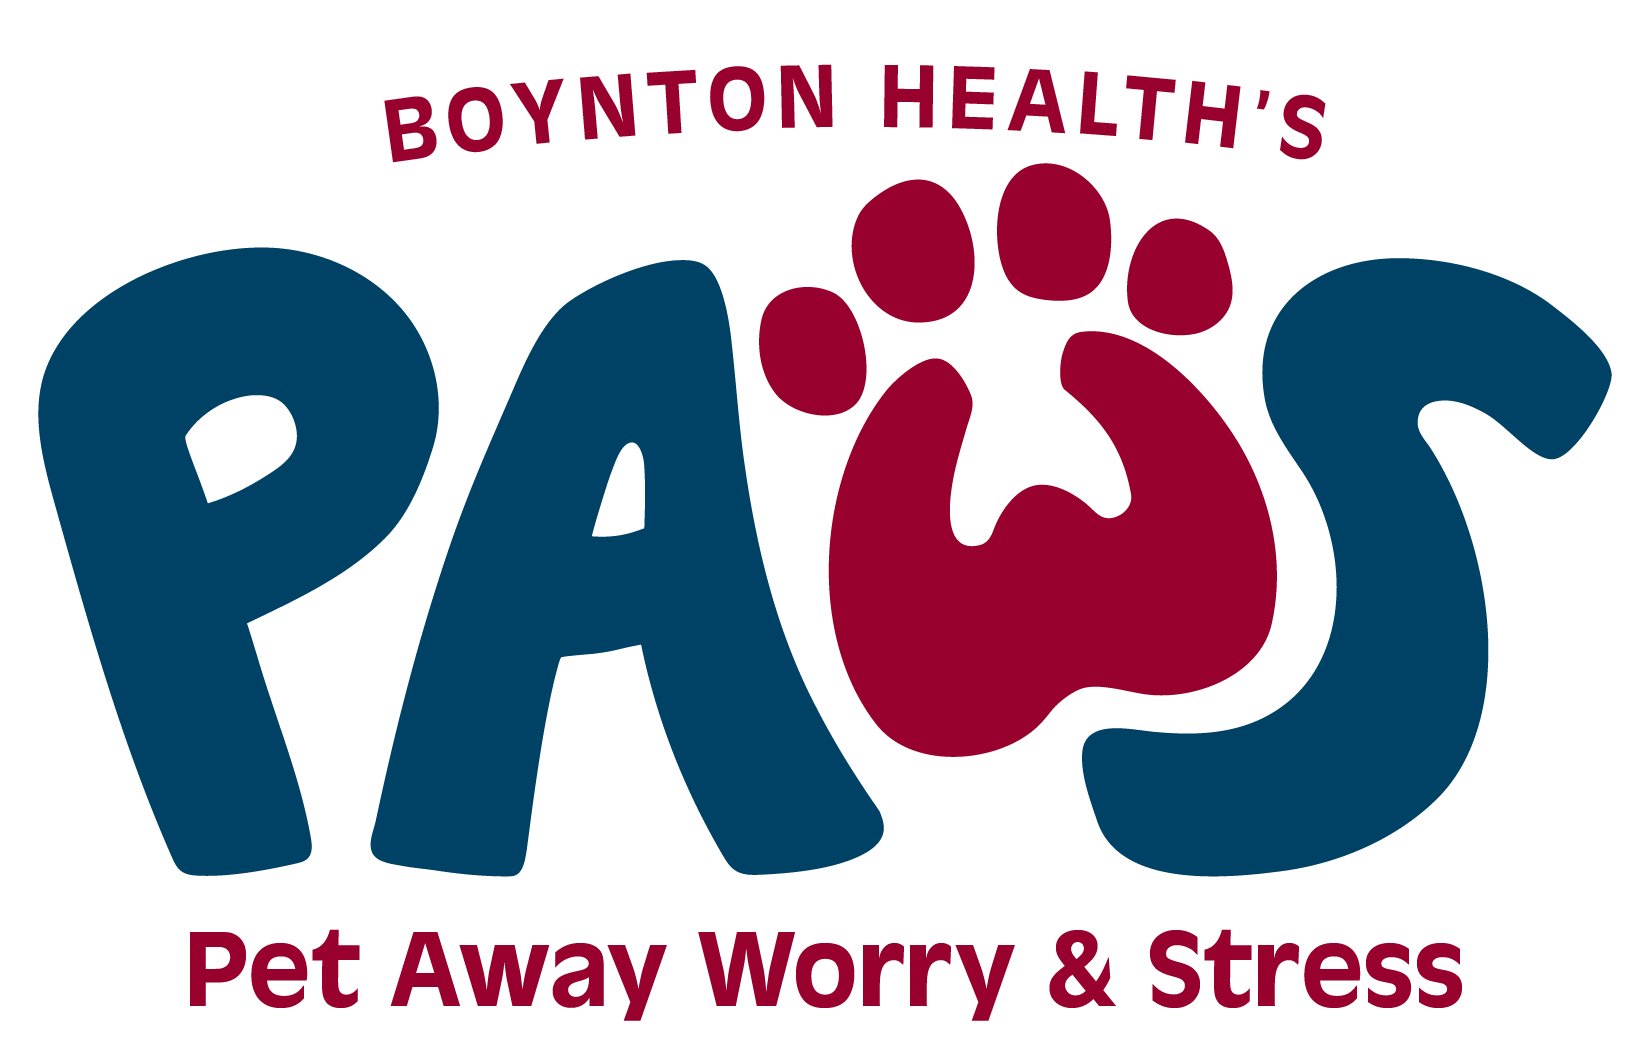 PAWS - Pet Away Worry & Stress